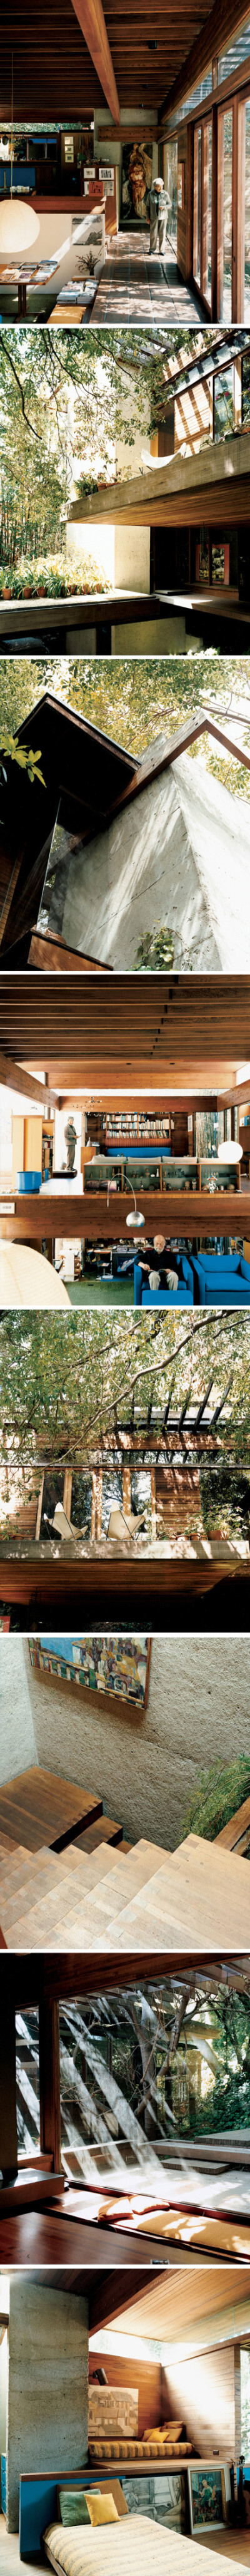 建筑师Ray Kappe的自宅建于1965年，位于美国加州Pacific Palisades市的峡谷中。内部空间自由流动，阳光经过周边树林的过滤后通过天窗，角窗照进室内，感觉温暖而宽敞。这栋住宅是最能体现Ray Kappe建筑思想的代表作…